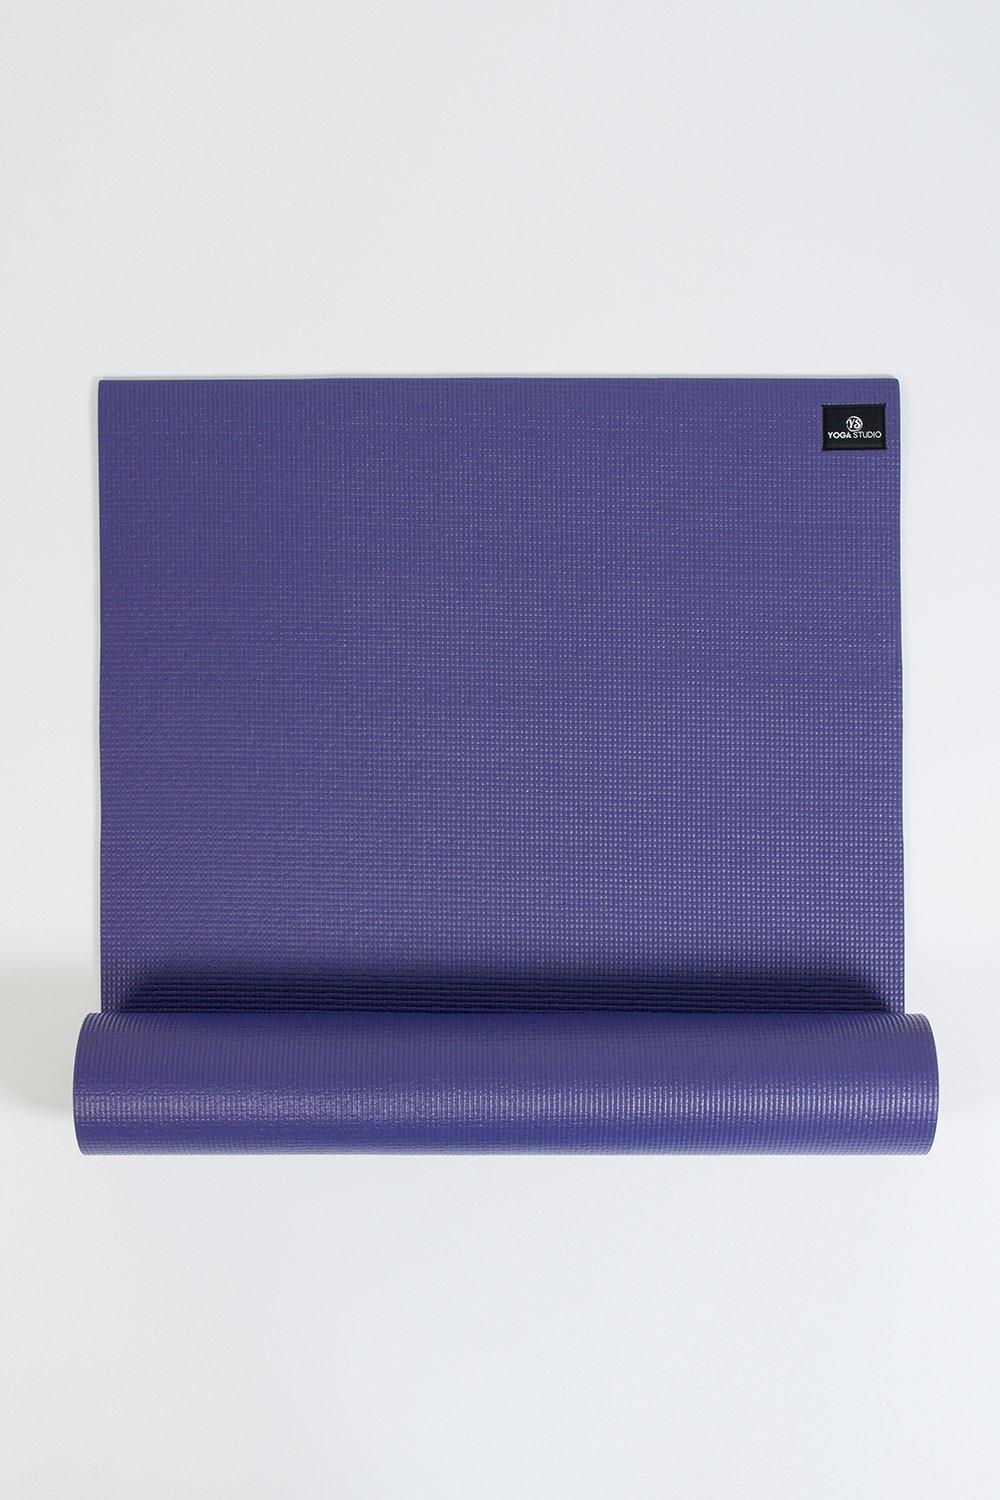 Yoga Studio Sticky Yoga Mat 6mm|purple